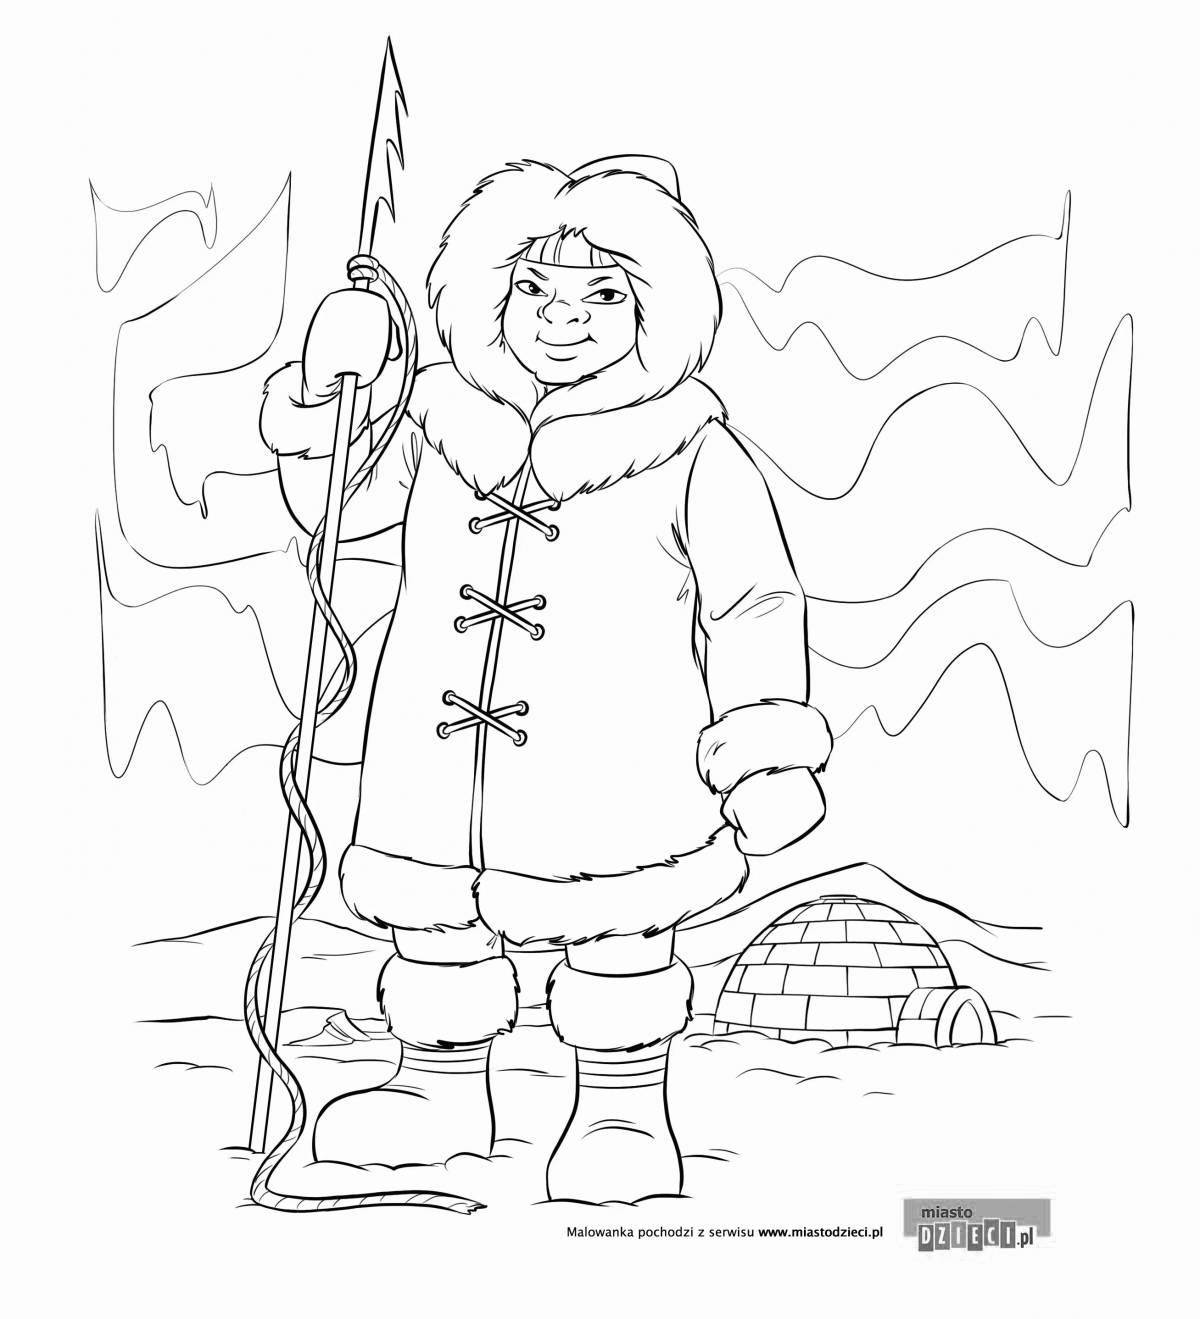 Magic eskimo coloring book for kids